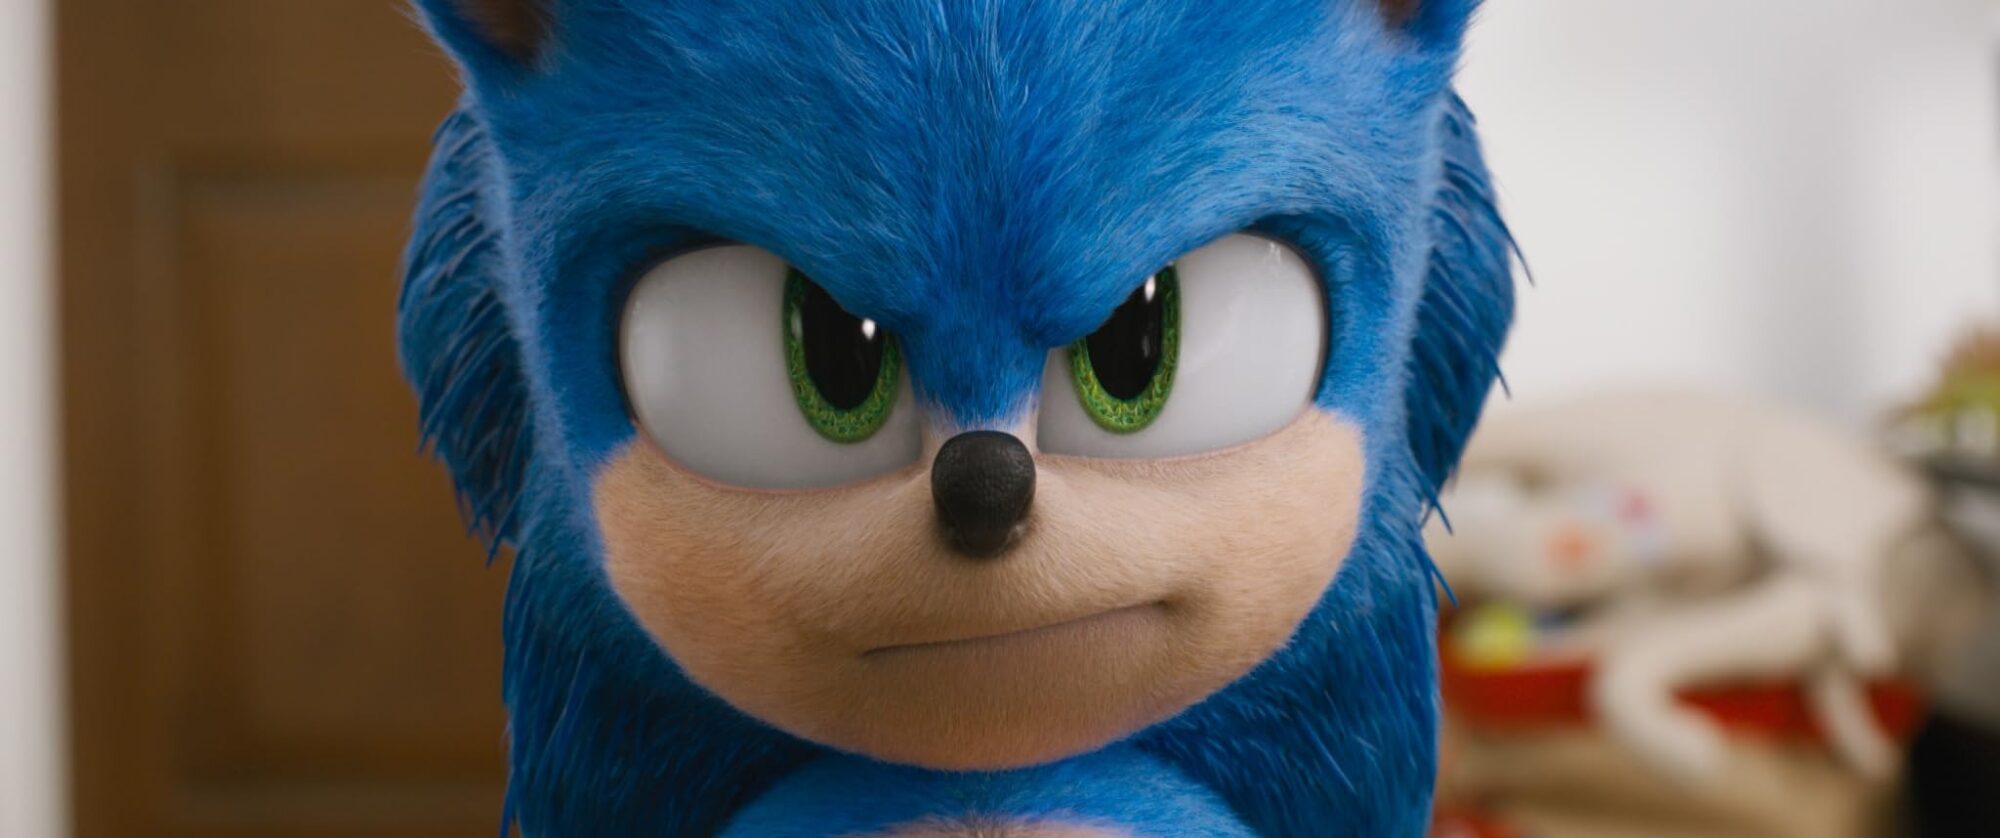 Veja 15 Curiosidades inéditas sobre o filme Sonic, de 2020 6